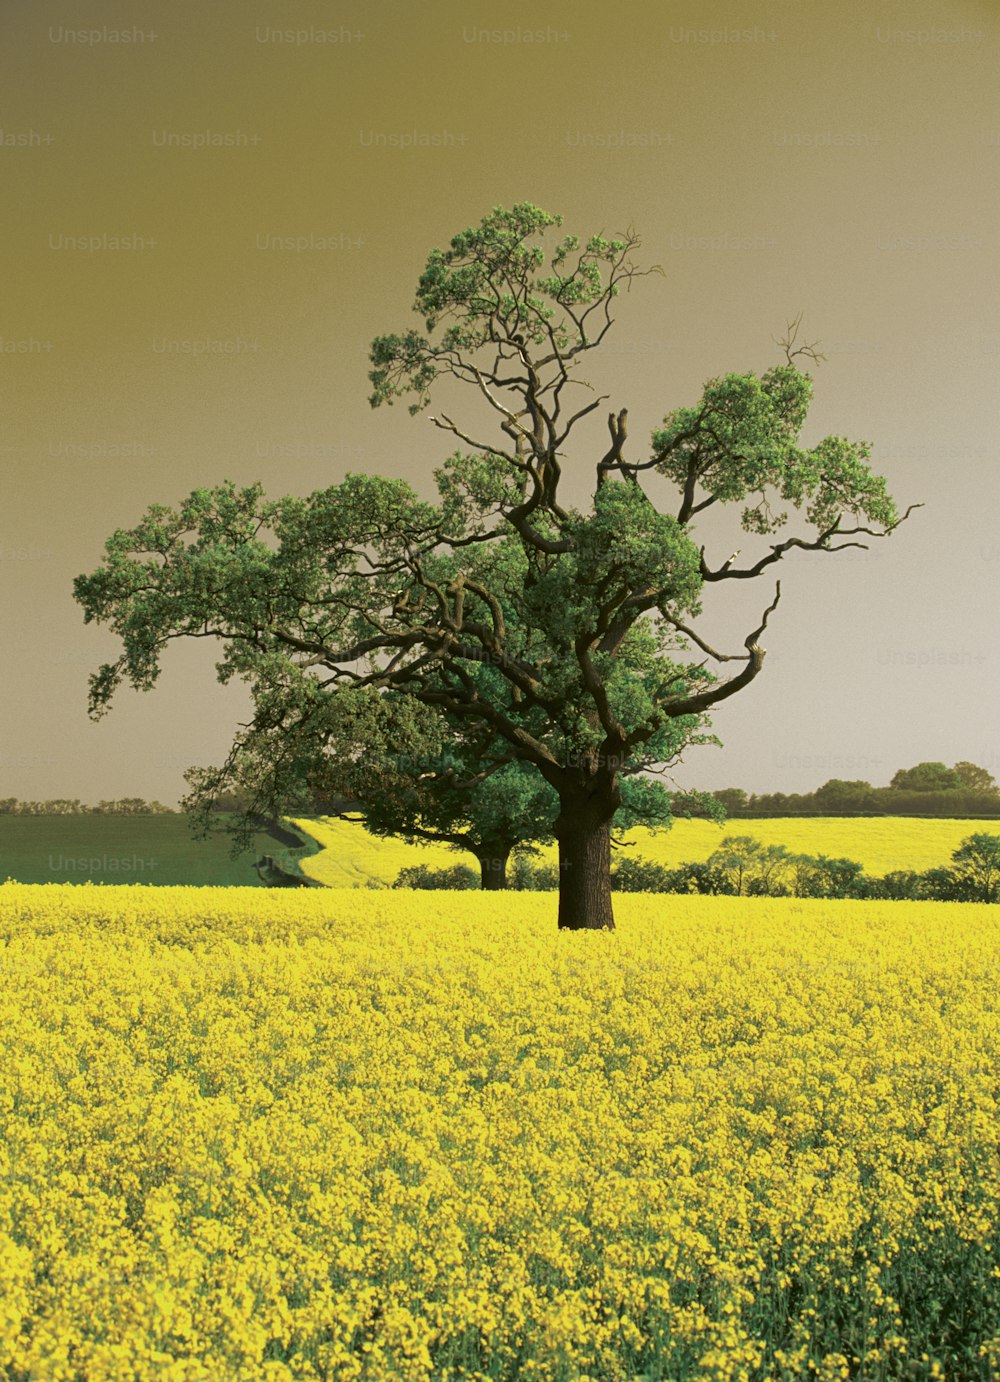 Un arbre solitaire dans un champ de fleurs jaunes